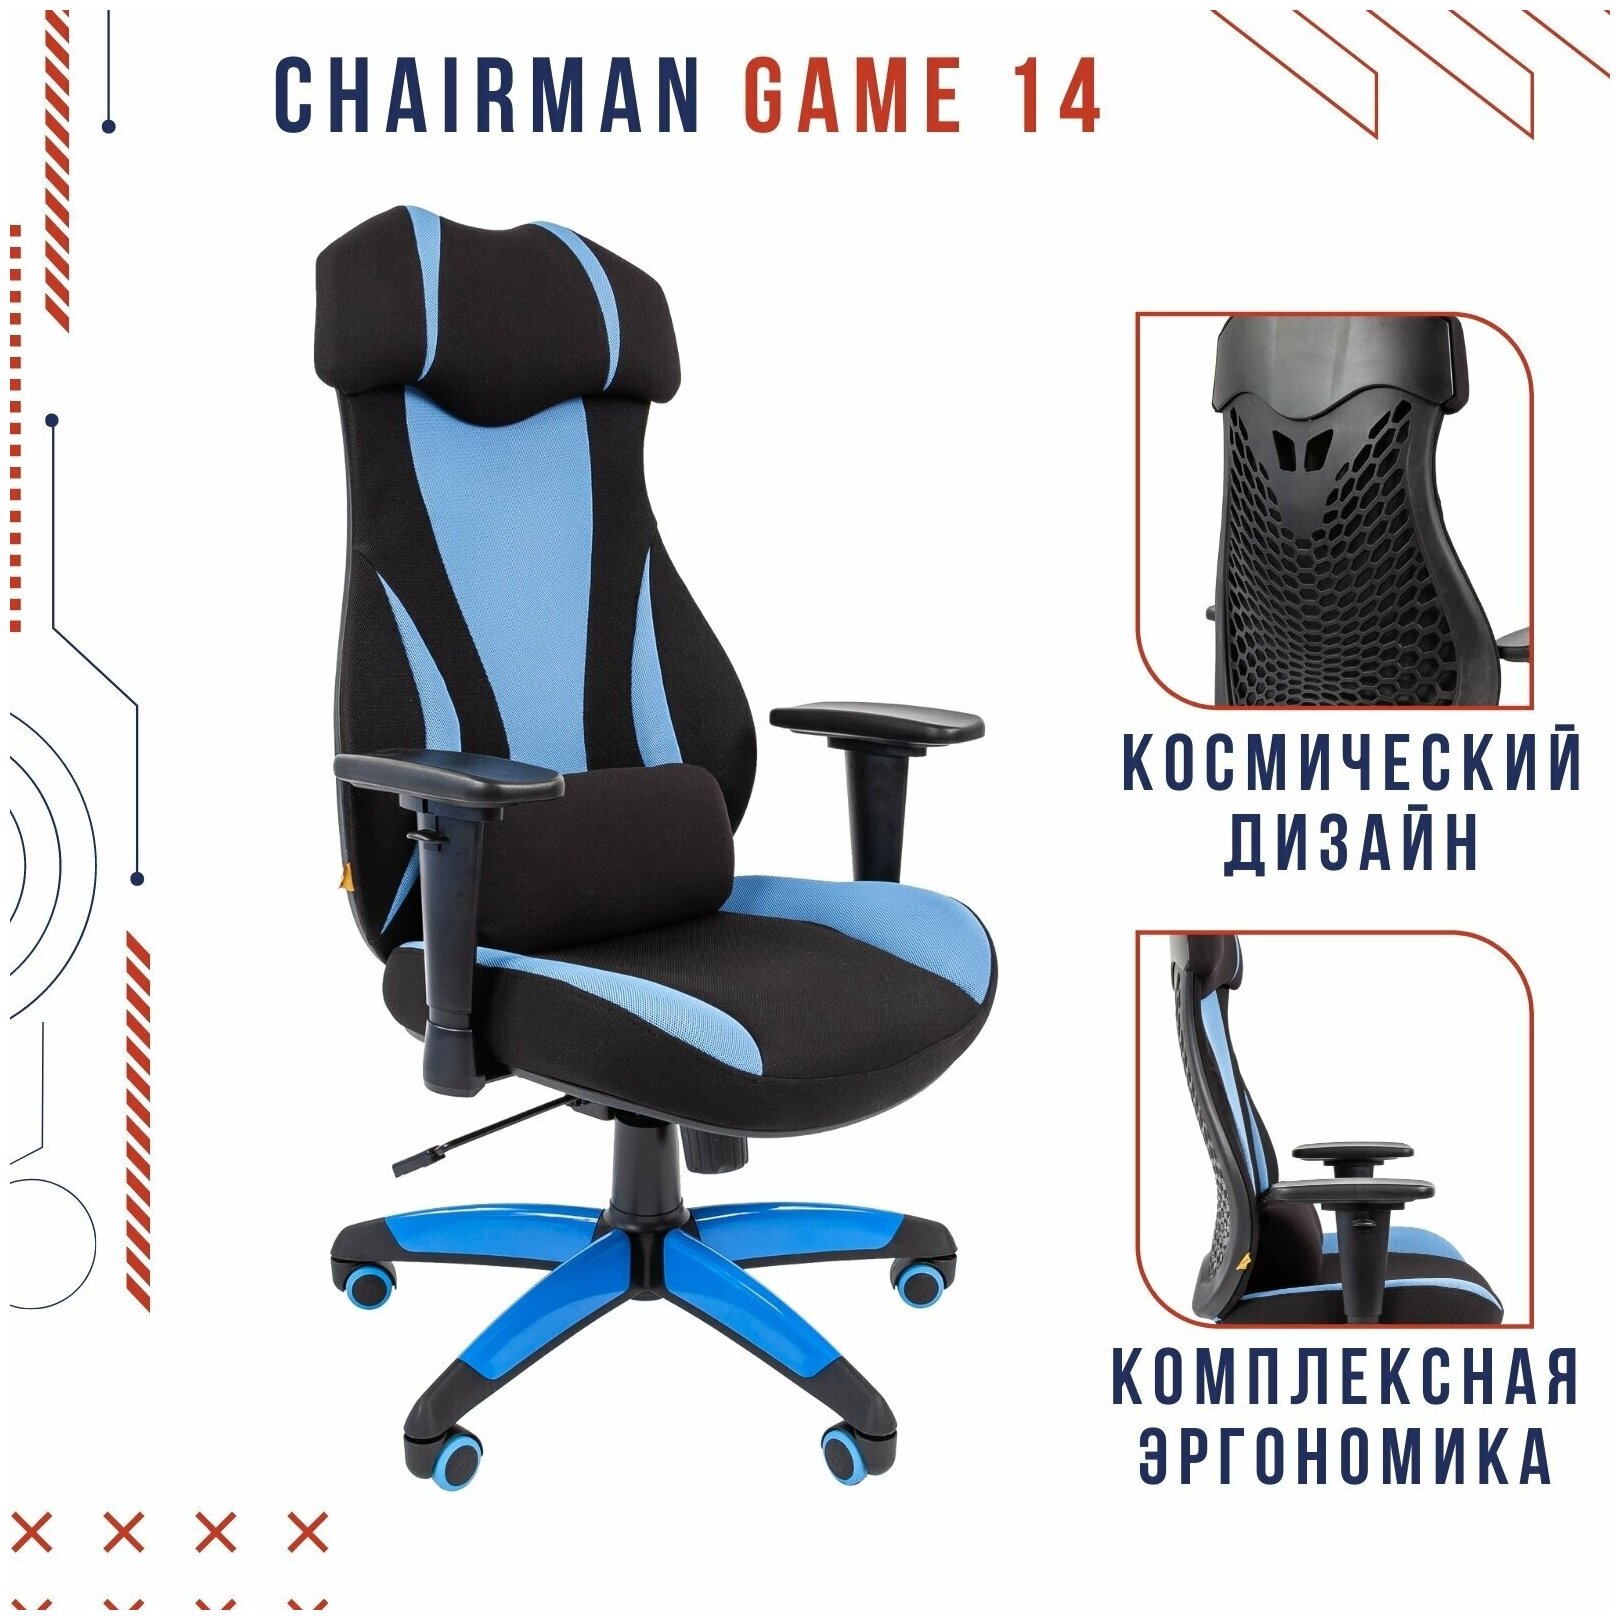 Офисное кресло Chairman game 14 ткань черный/голубой